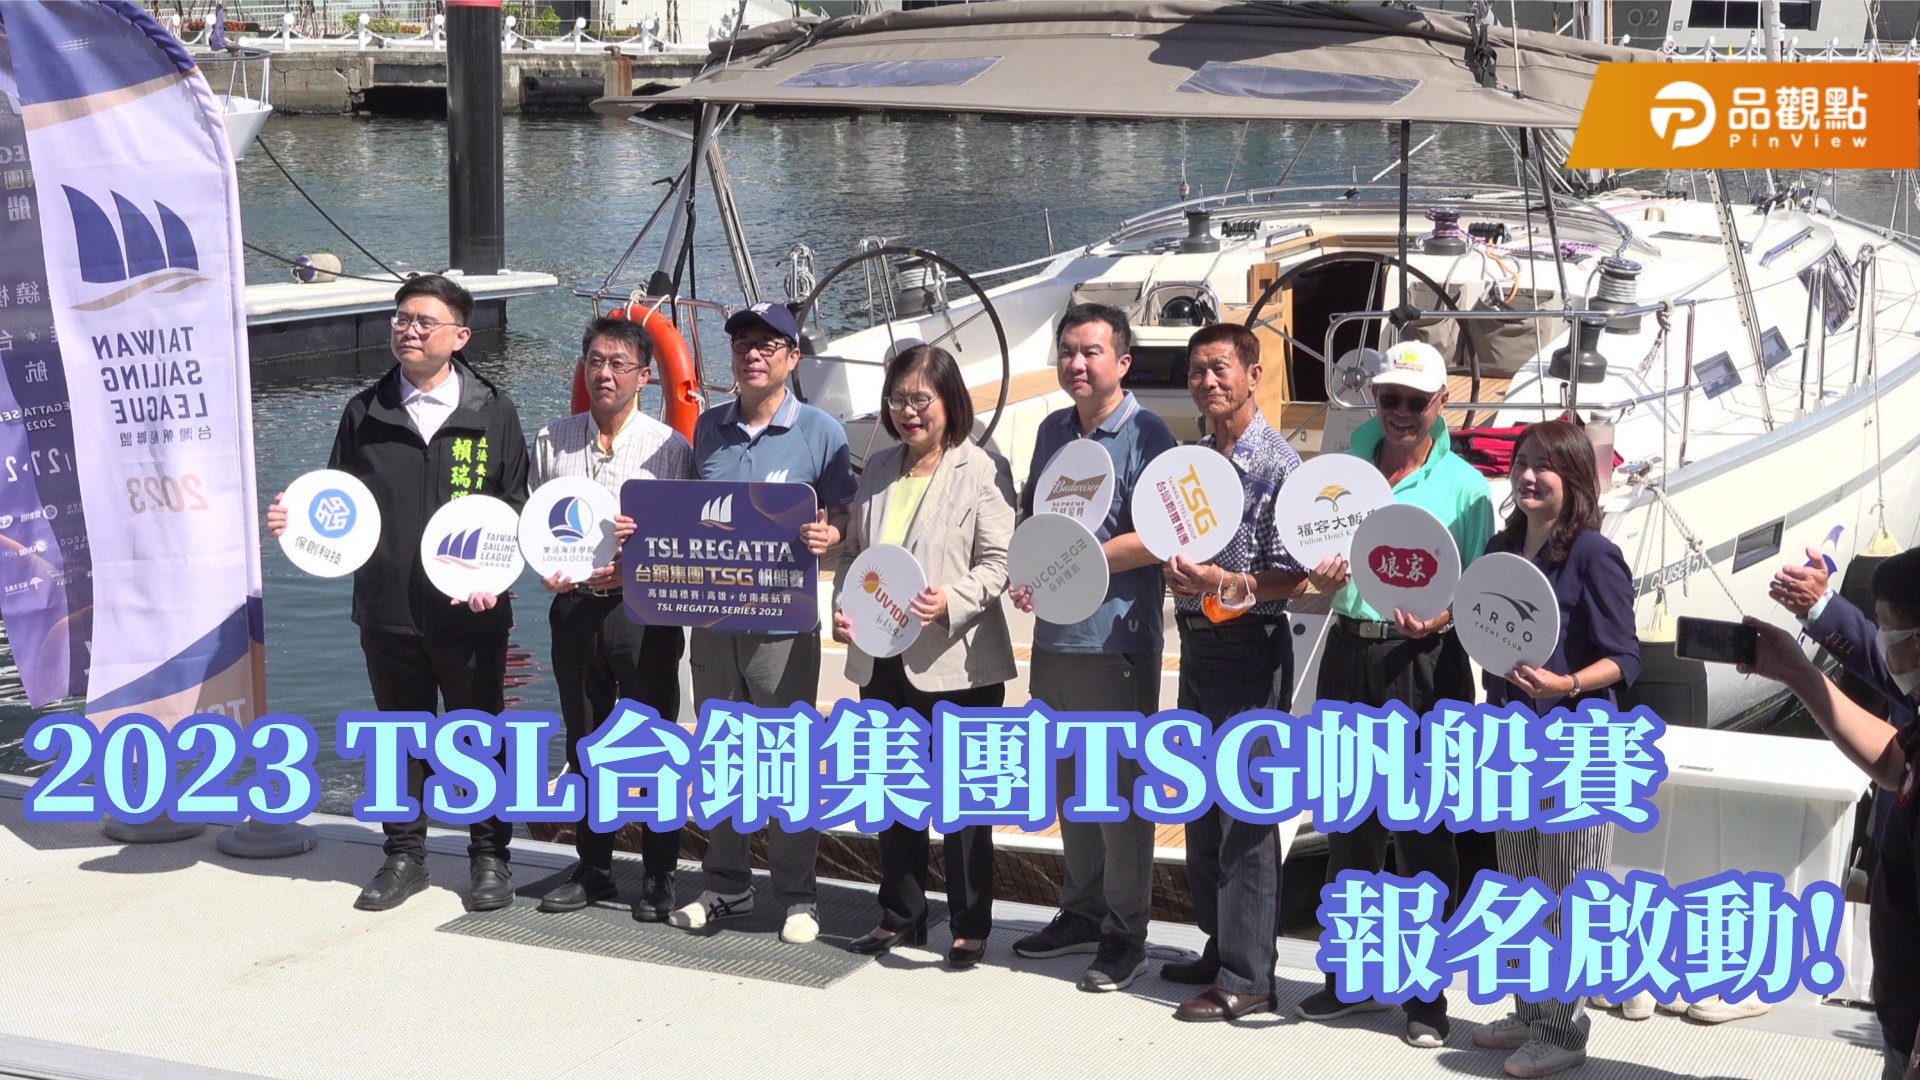 TSG百萬獎金帆船賽報名啟動 陳其邁:支持明年辦環台賽